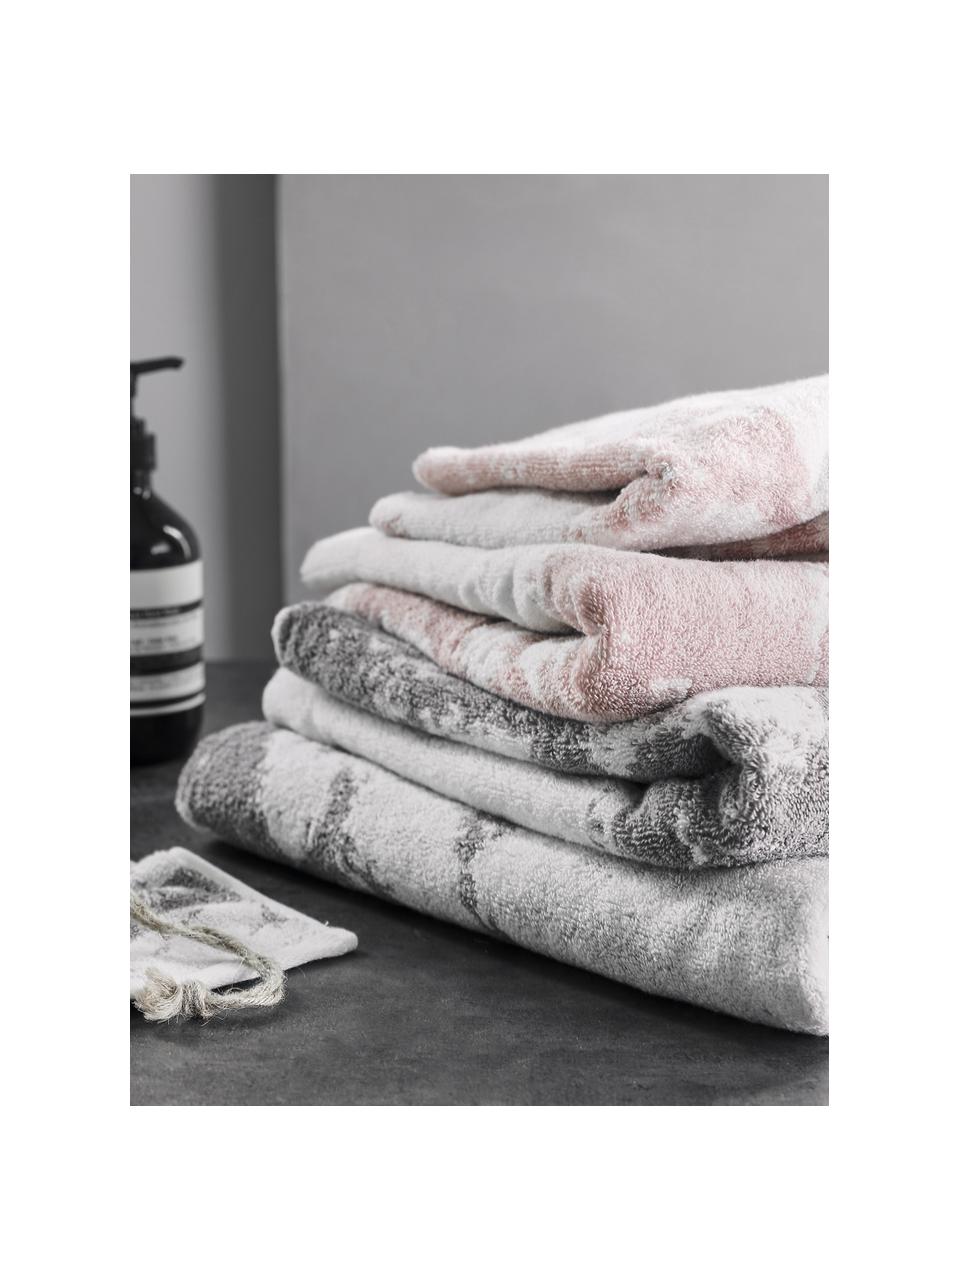 Handtuch-Set Malin mit Marmor-Print, 3-tlg., Rosa, Cremeweiß, Set mit verschiedenen Größen